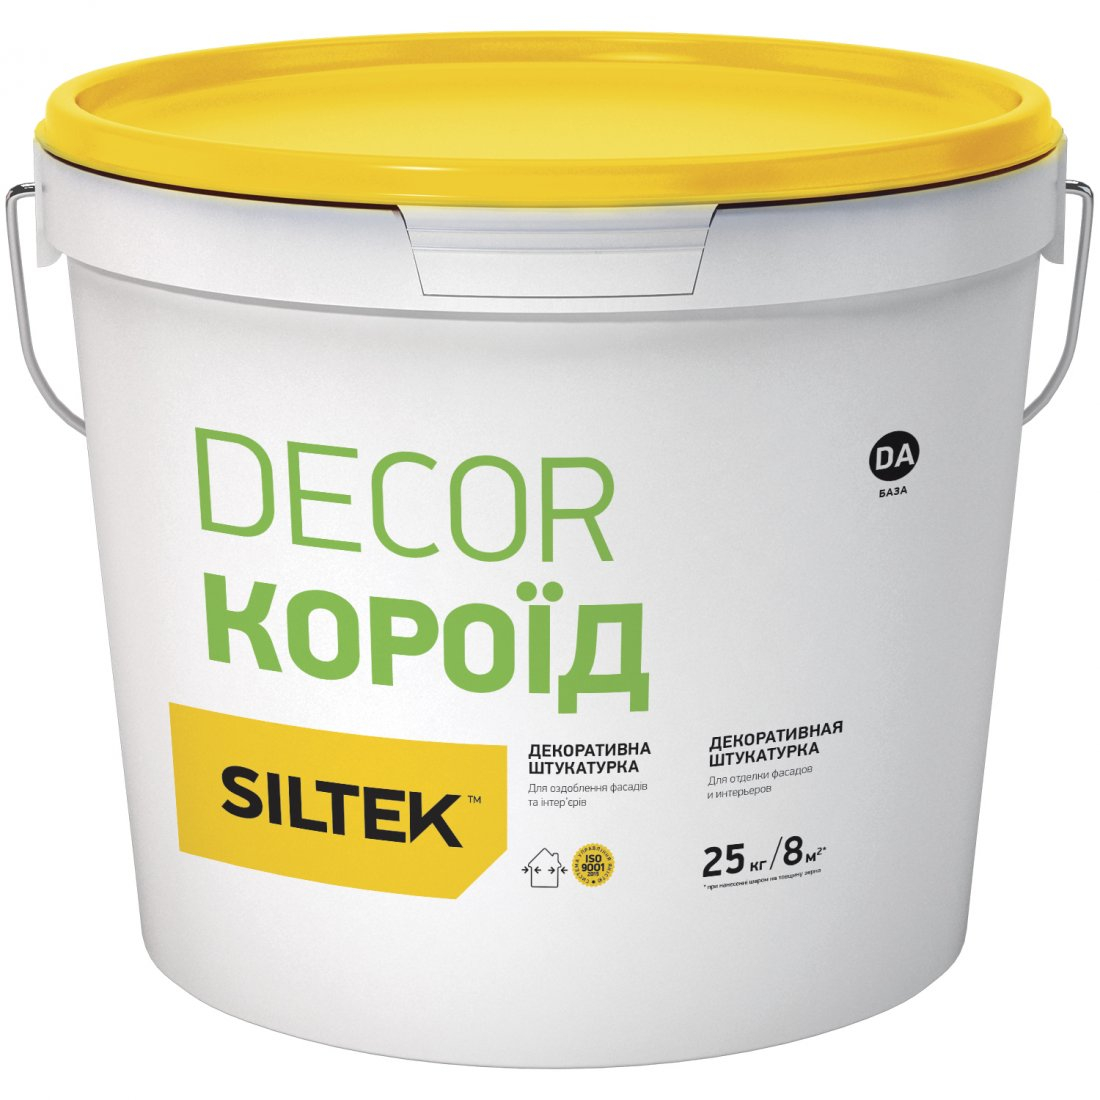 Декоративна штукатурка SILTEK Decor Pro Короїд 1,5мм БАЗА DС, 25кг 